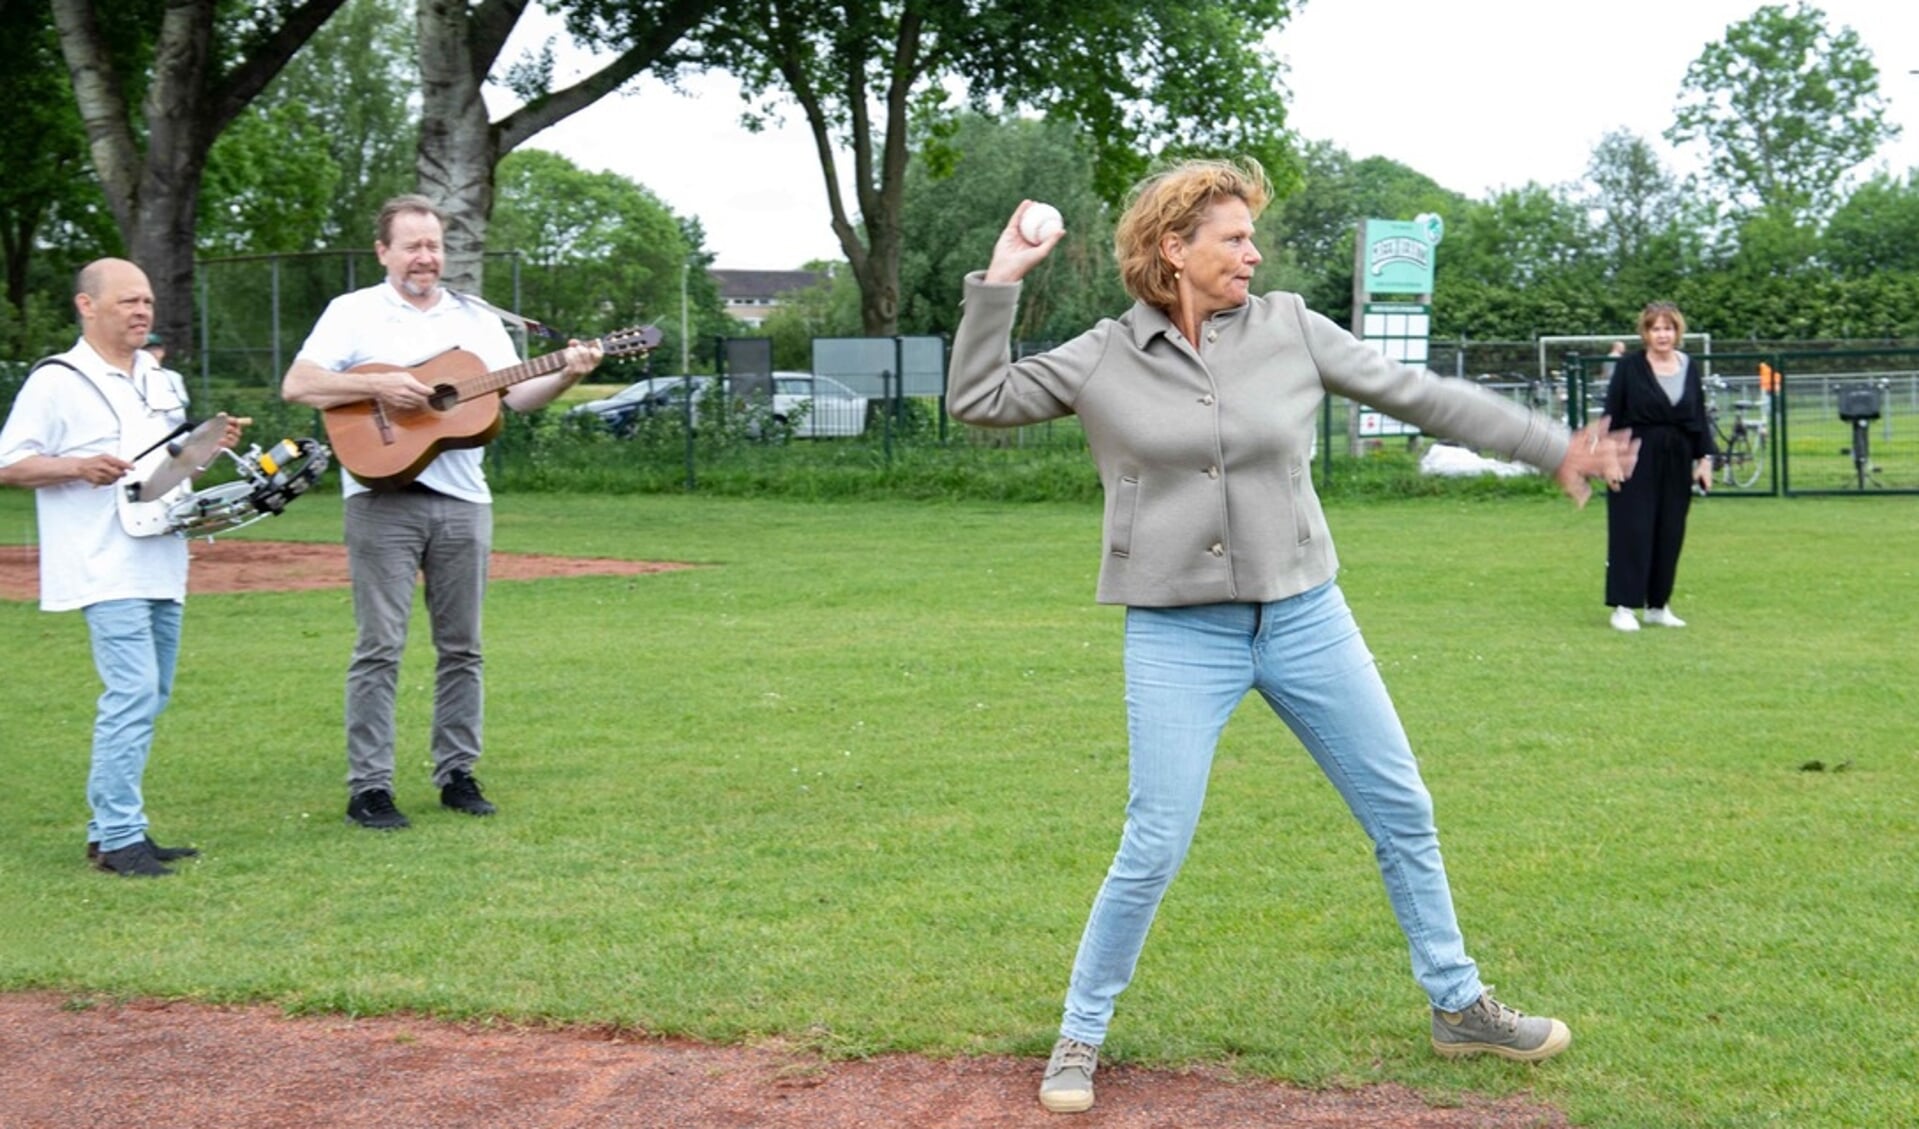 Burgemeester Petra van Hartskamp verrichtte de traditionele first pitch. 